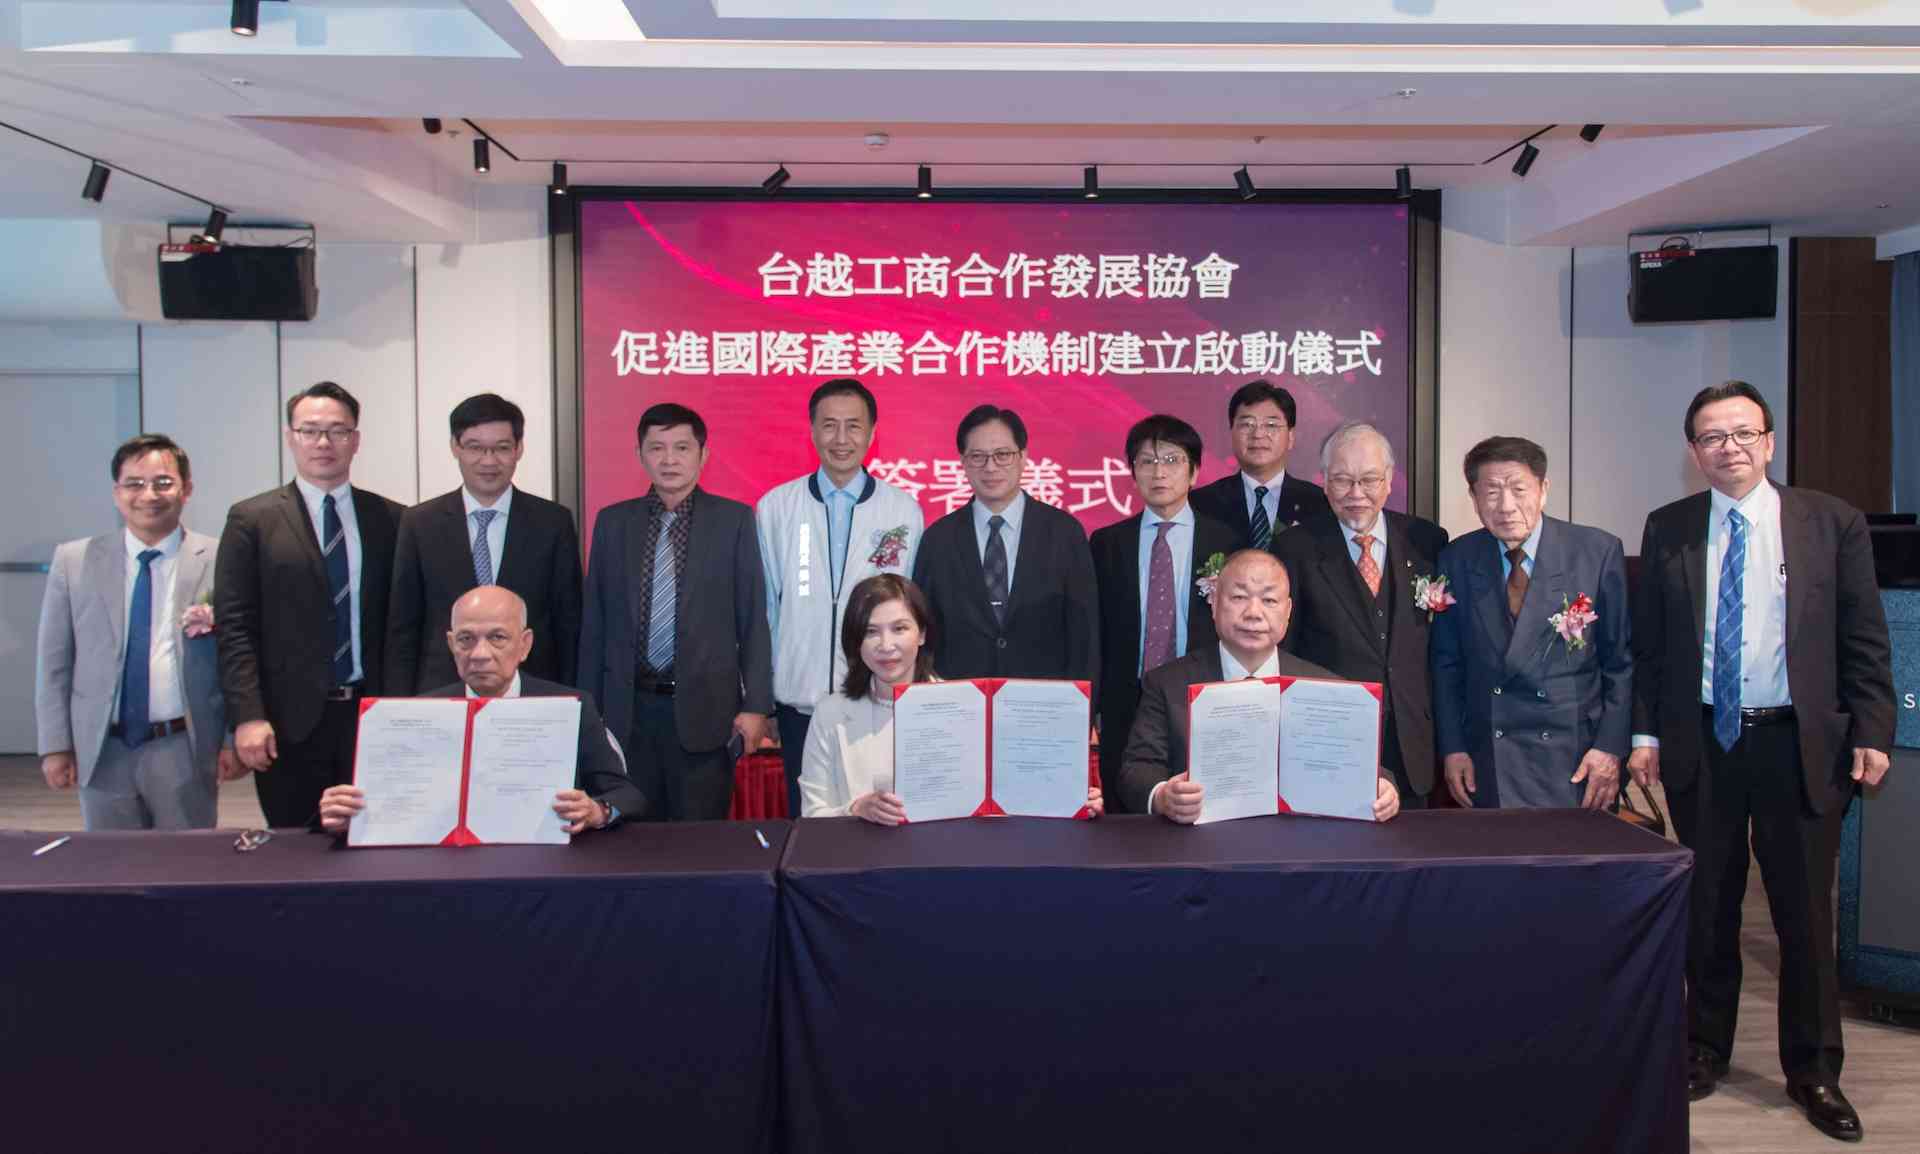 台越協會搭建台灣、越南、日本國際產業合作平台 開拓商機